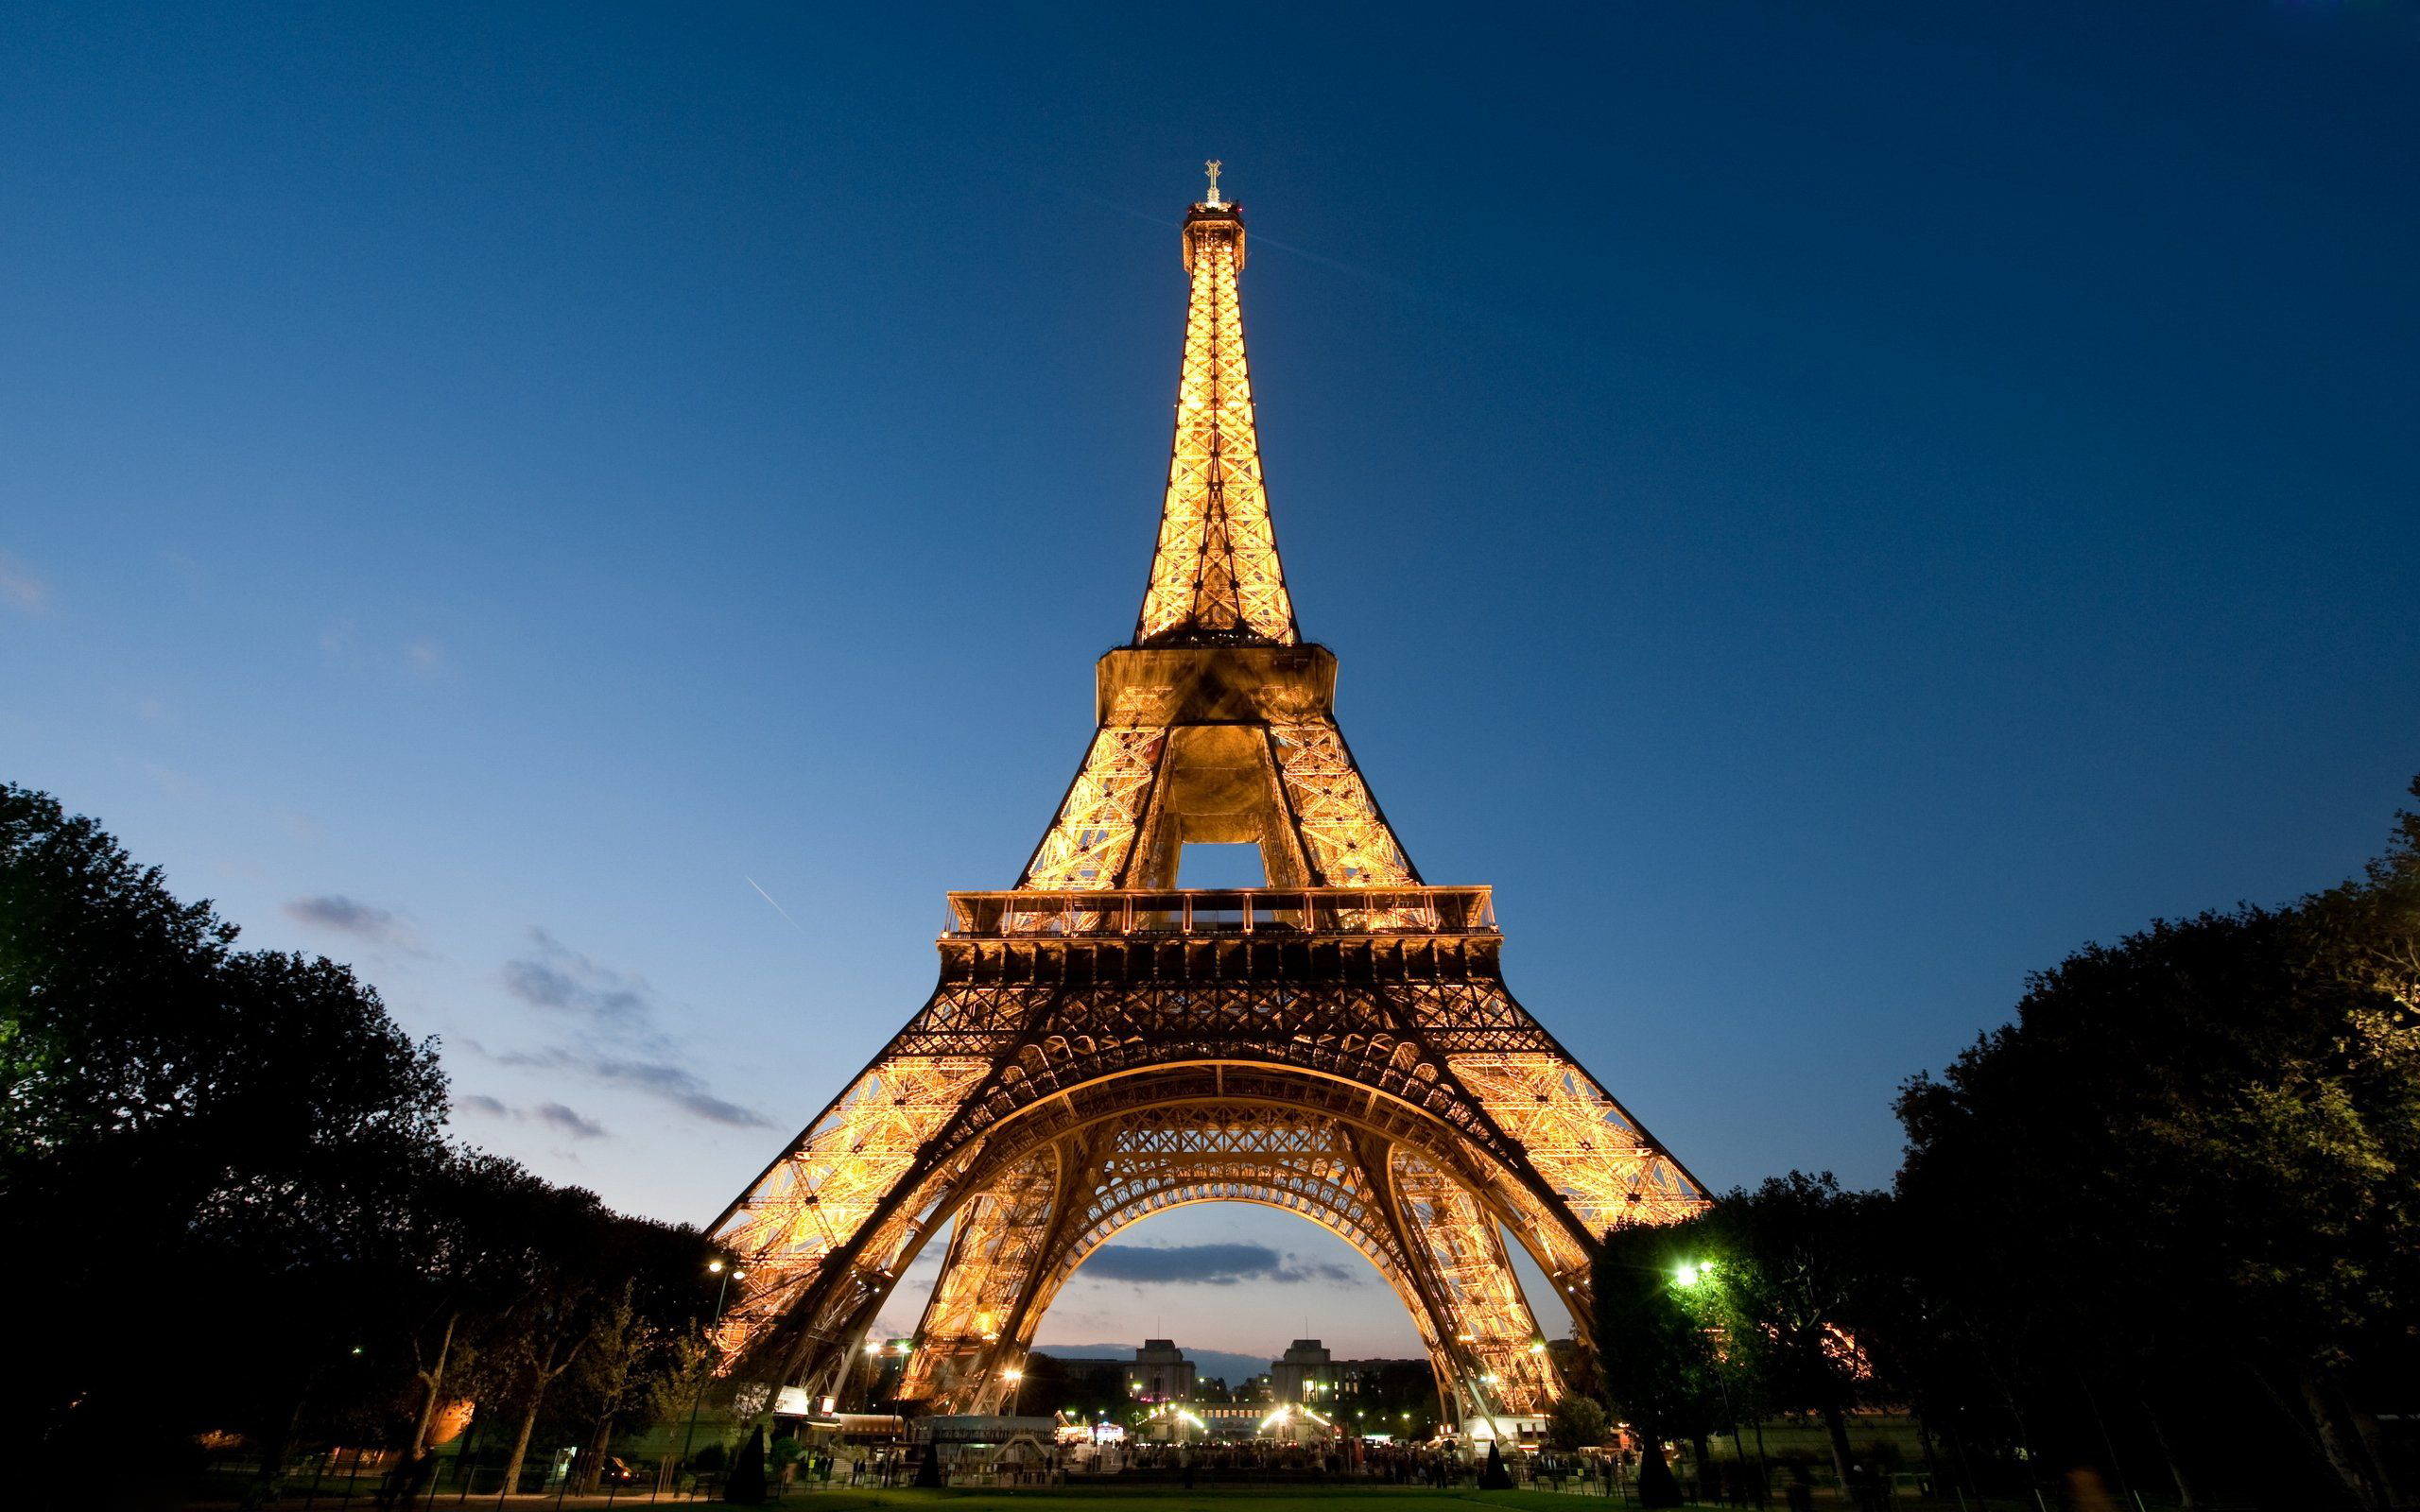 Hd - Eiffel Tower , HD Wallpaper & Backgrounds